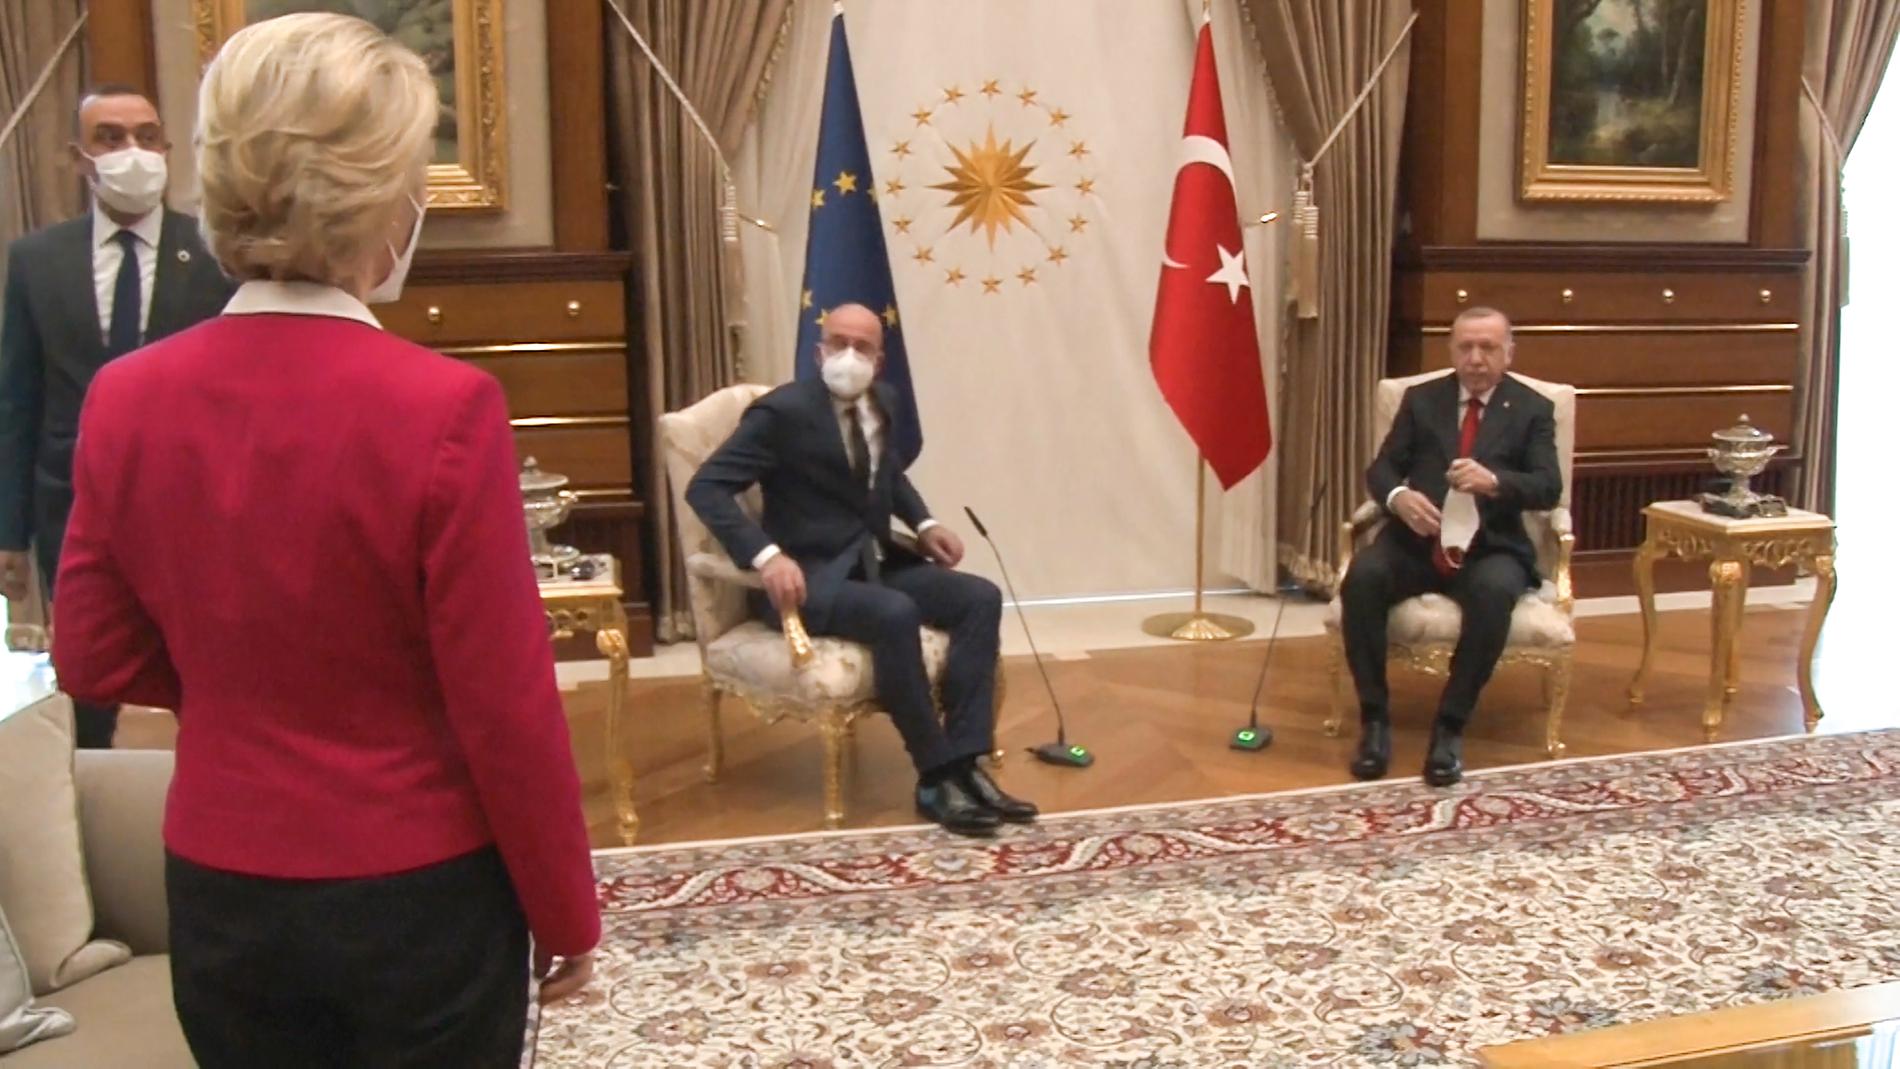 EU-kommissionens ordförande Ursula von der Leyen och EU:s rådsordförande Charles Michel på besök i Ankara hos president Recepo Tayyip Erdogan. von der Leyen fick ingen stol utan förpassades till soffan.